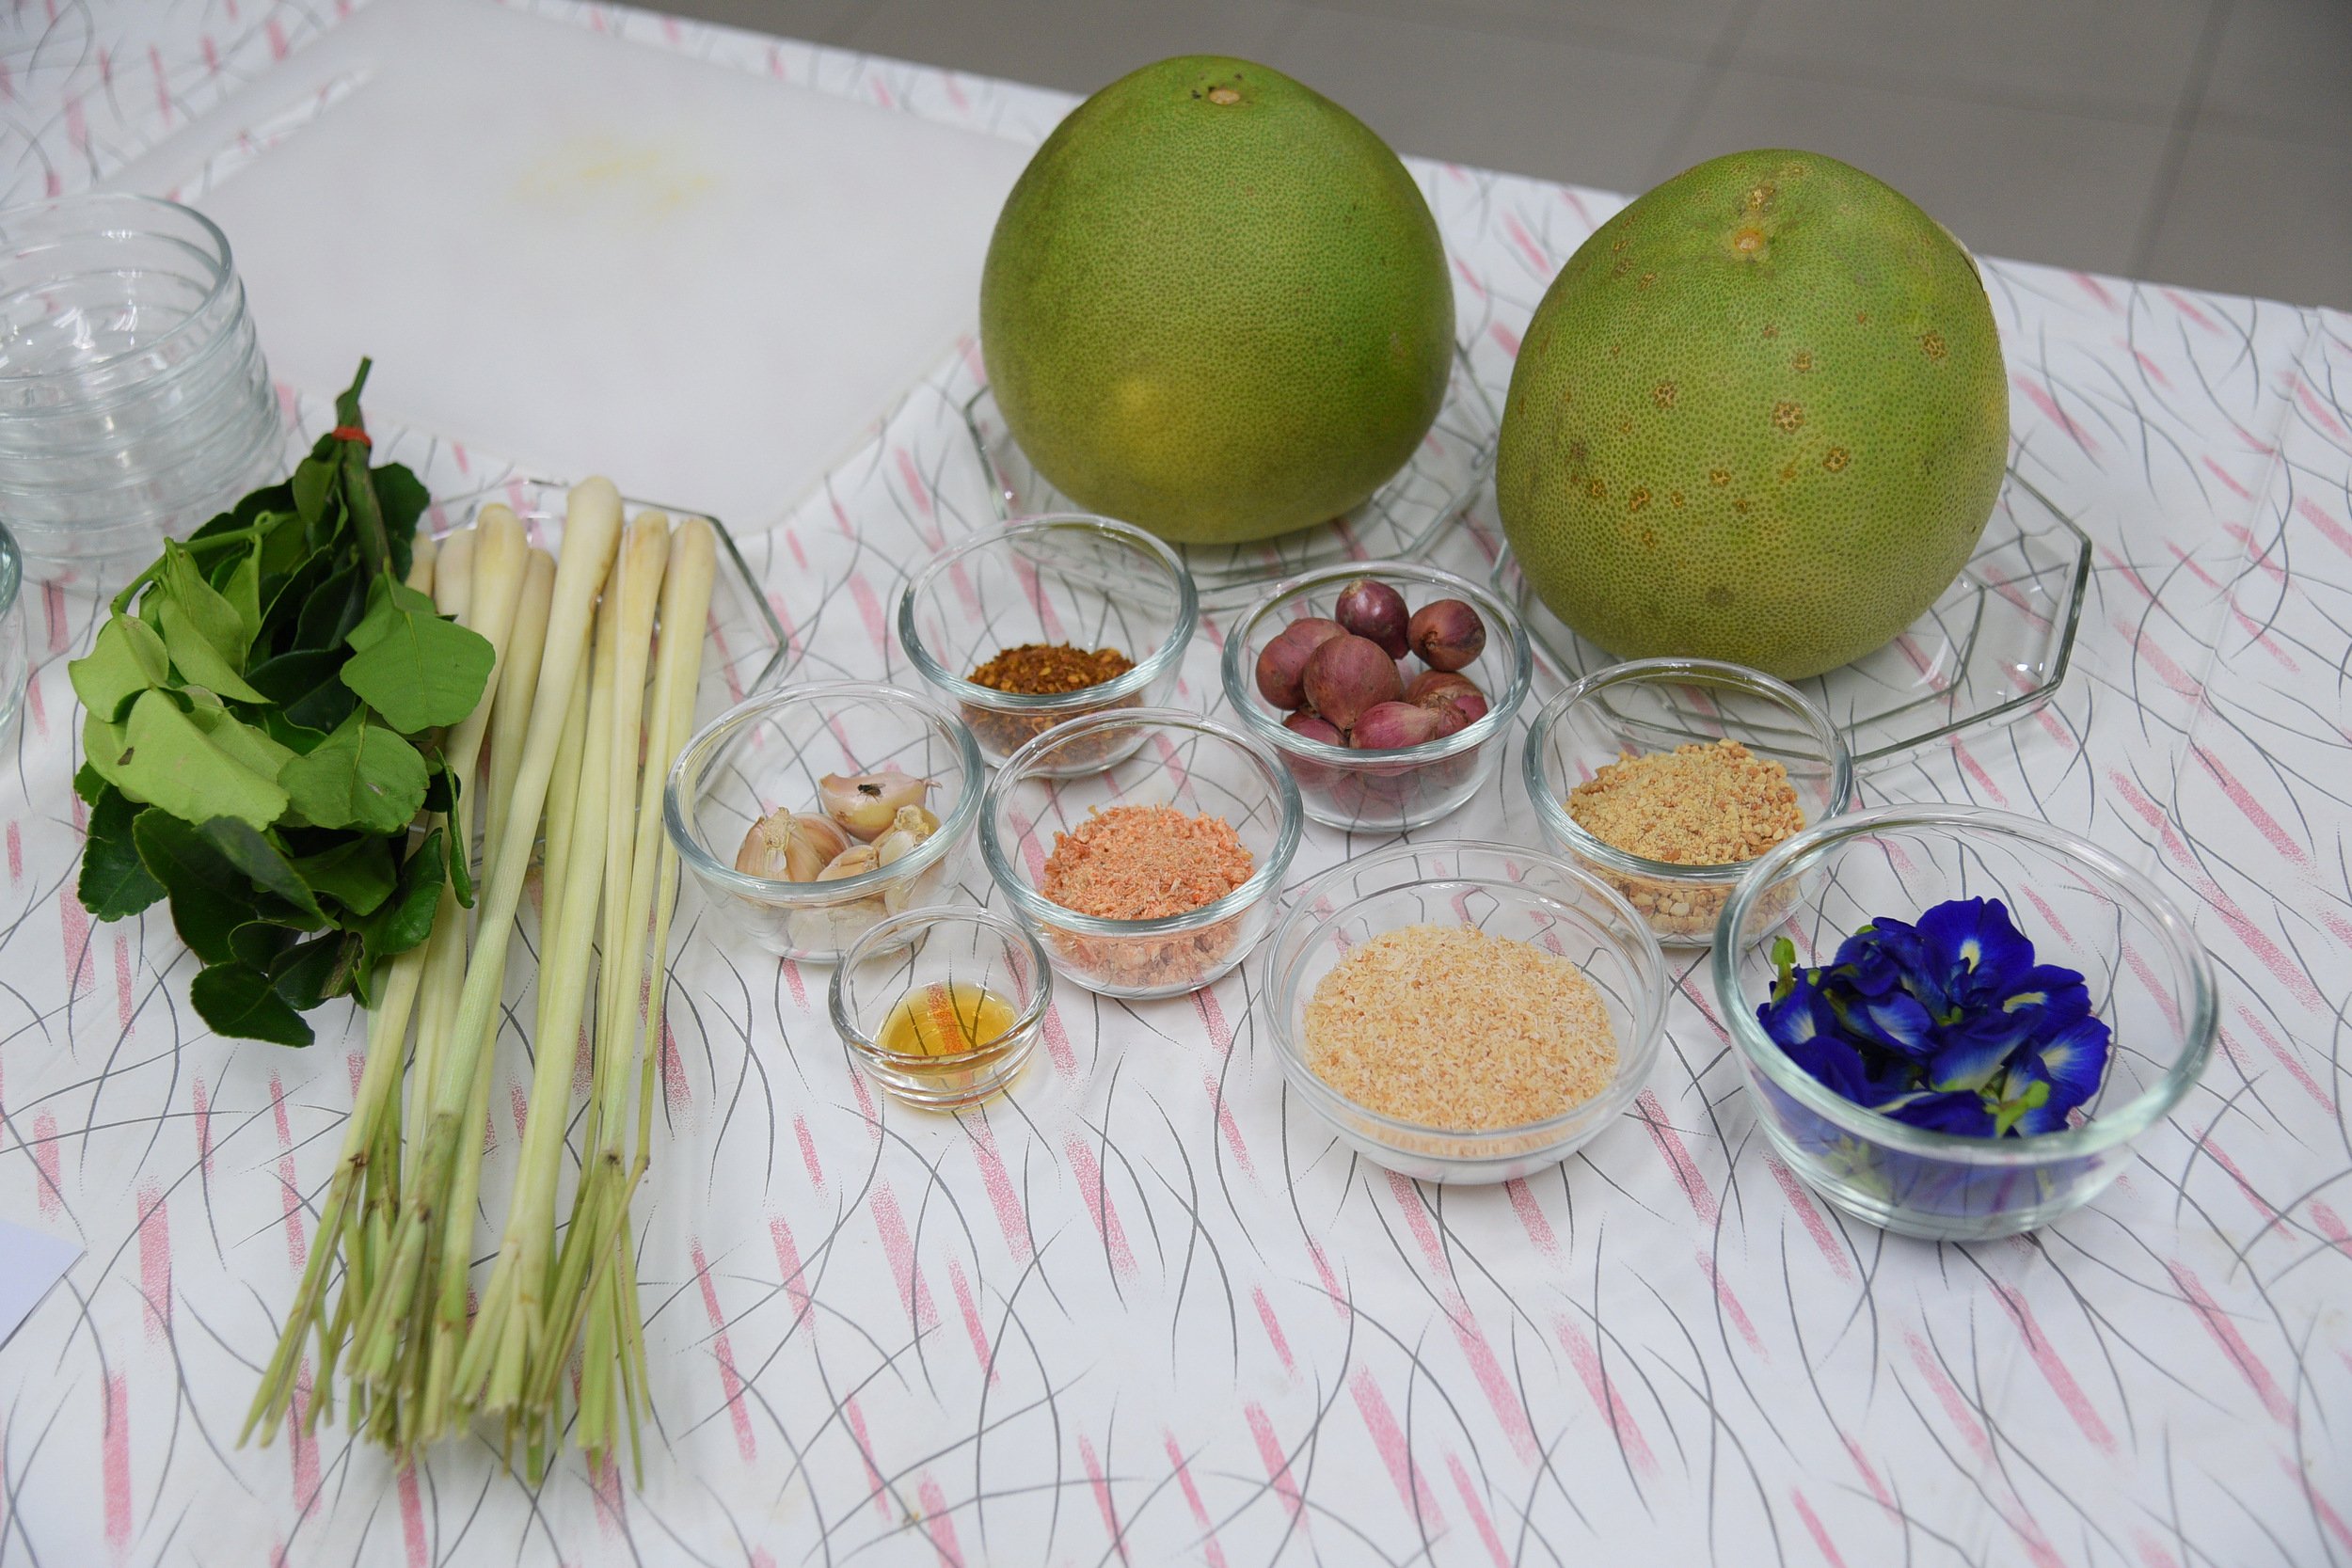 ผักผลไม้ปลอดสารพิษถึงผู้บริโภค thaihealth